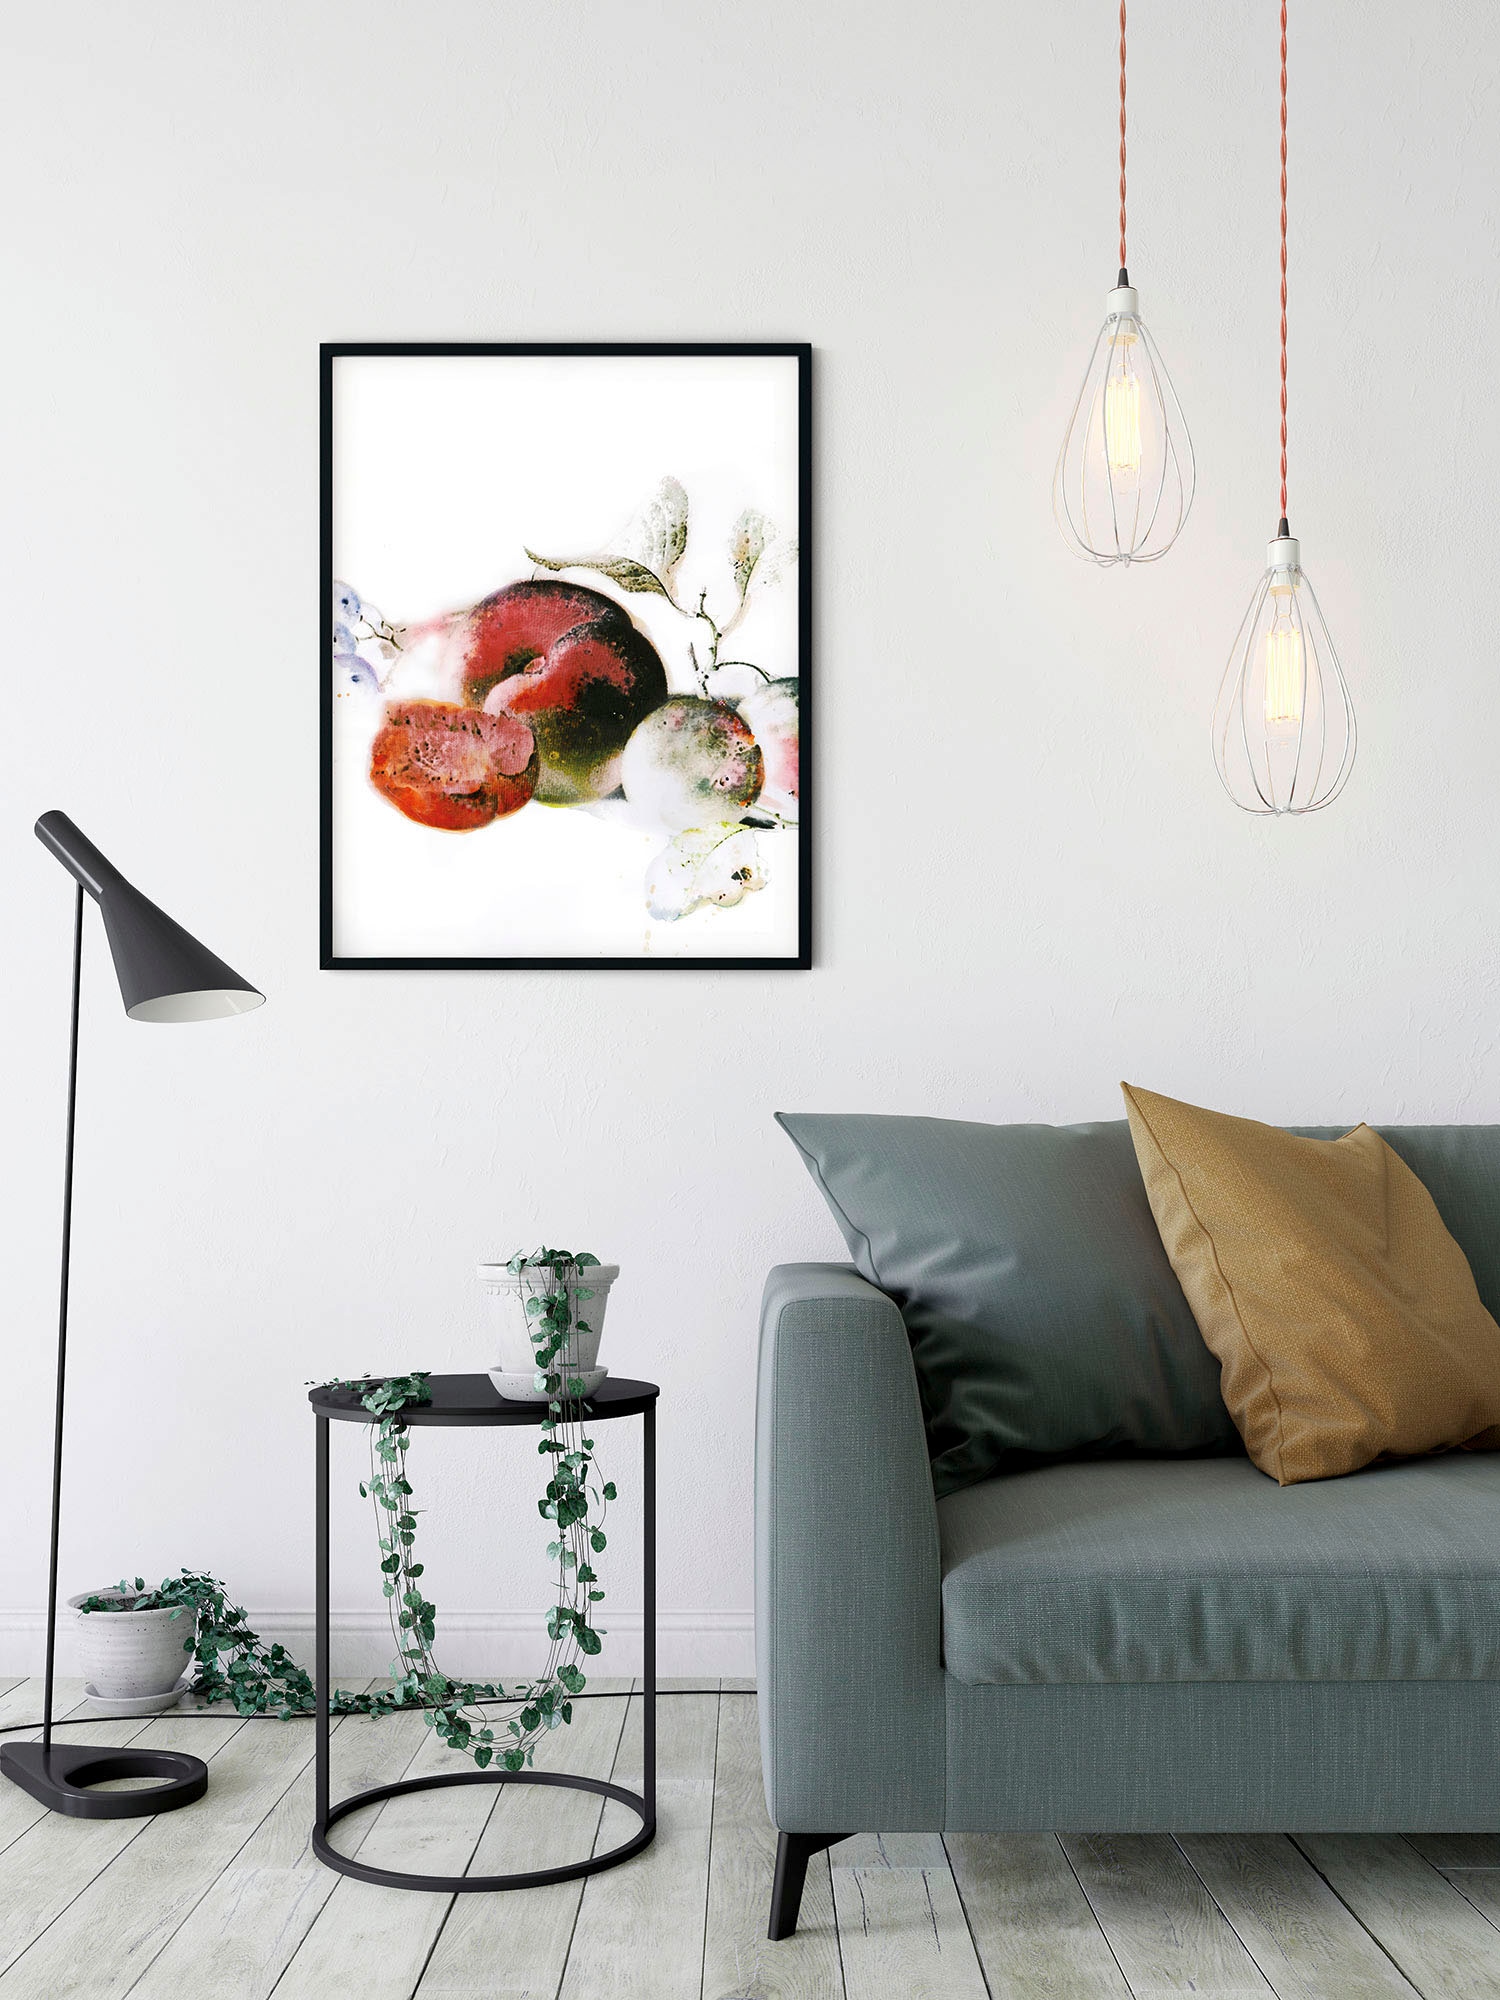 Komar Wandbild »Dessert Fruité«, (1 St.), Deutsches Premium-Poster Fotopapier mit seidenmatter Oberfläche und hoher Lichtbeständigkeit. Für fotorealistische Drucke mit gestochen scharfen Details und hervorragender Farbbrillanz.